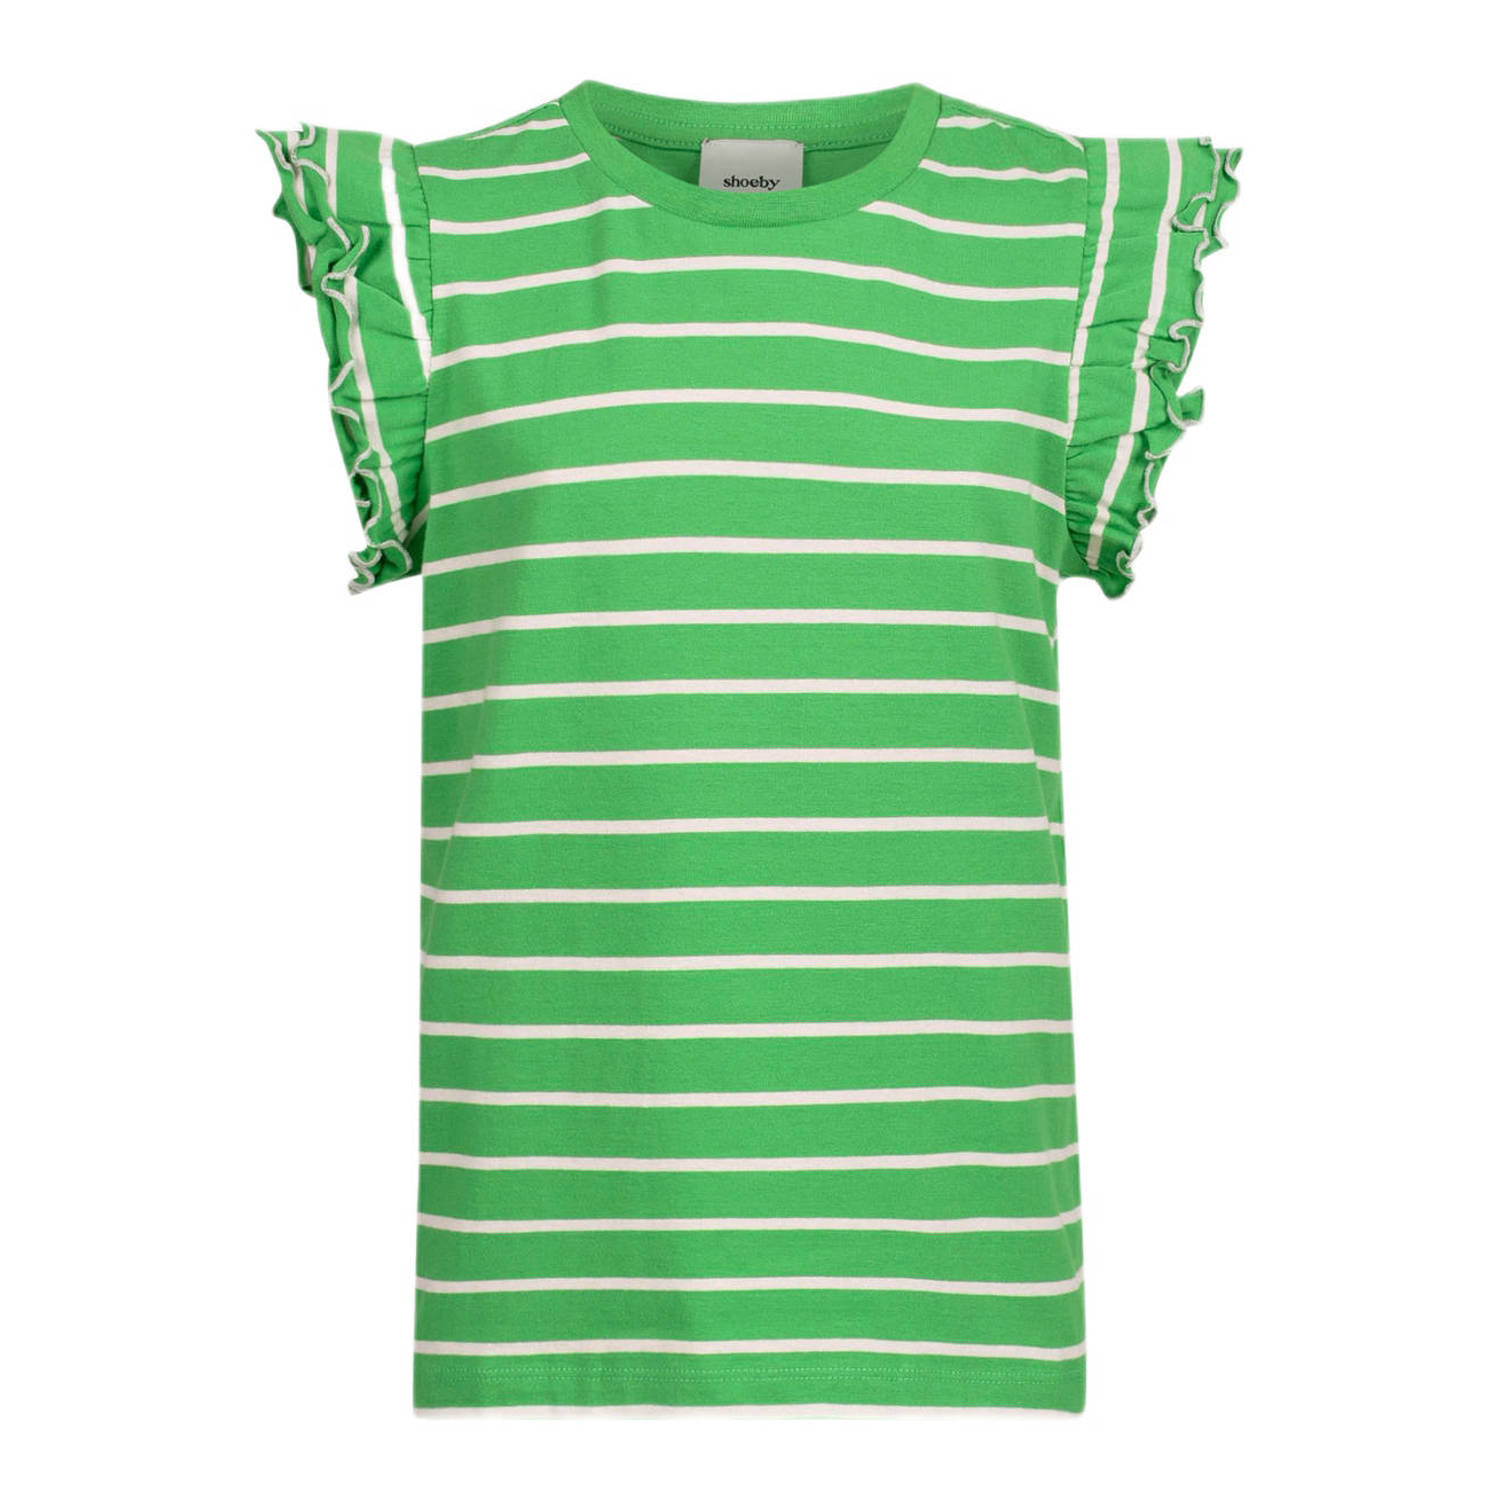 Shoeby gestreept T-shirt groen